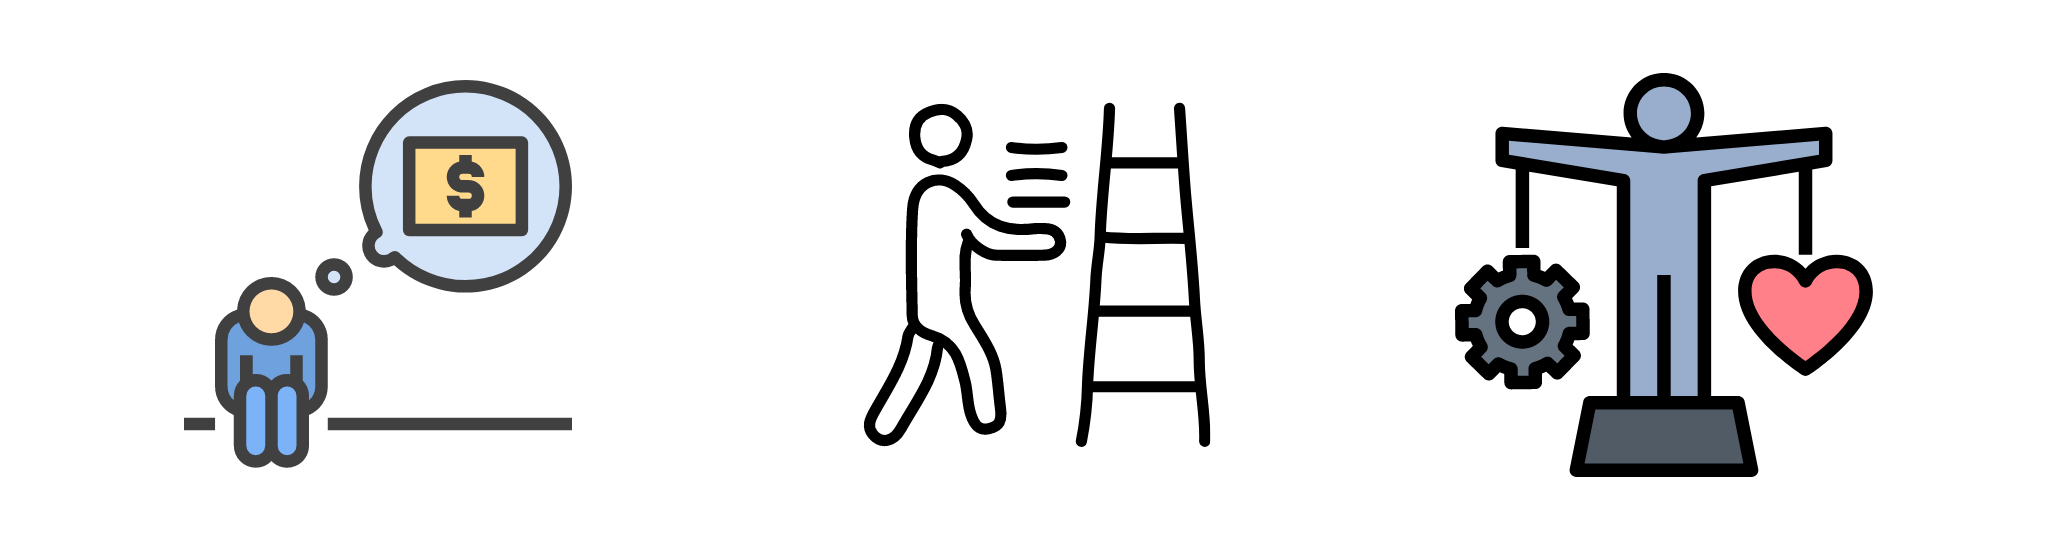 building ladder